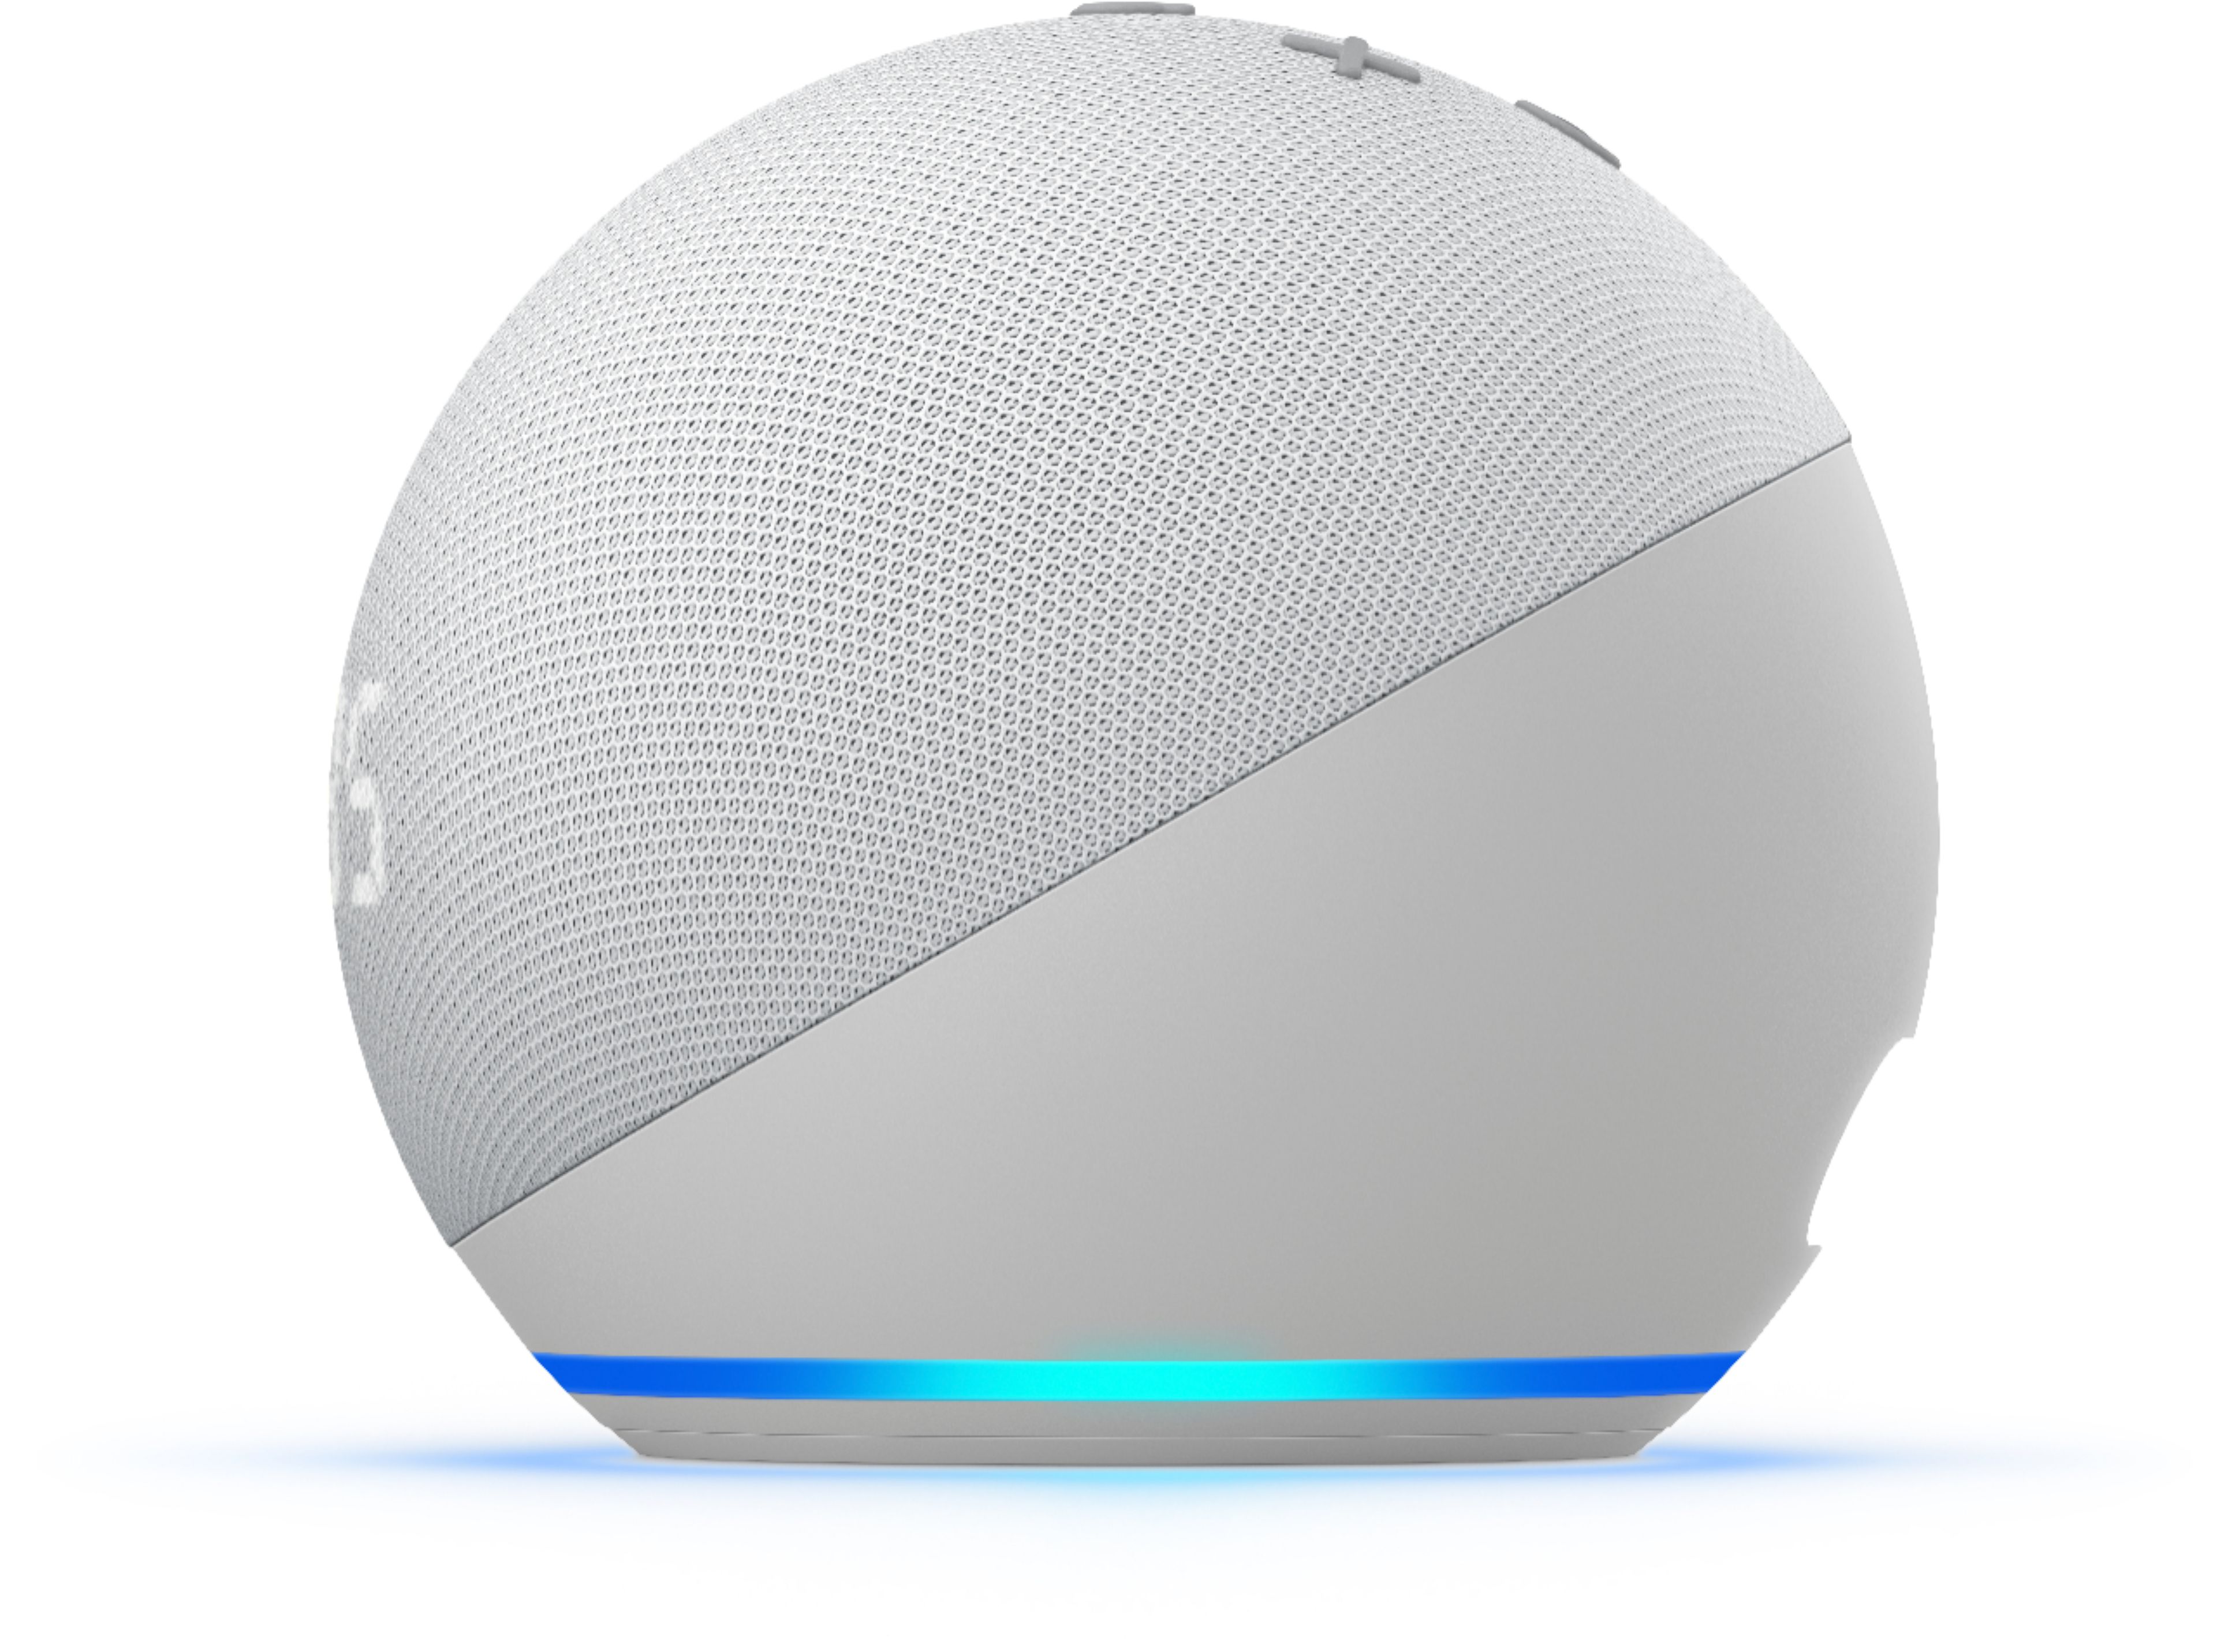 s Echo Dot drops to $20